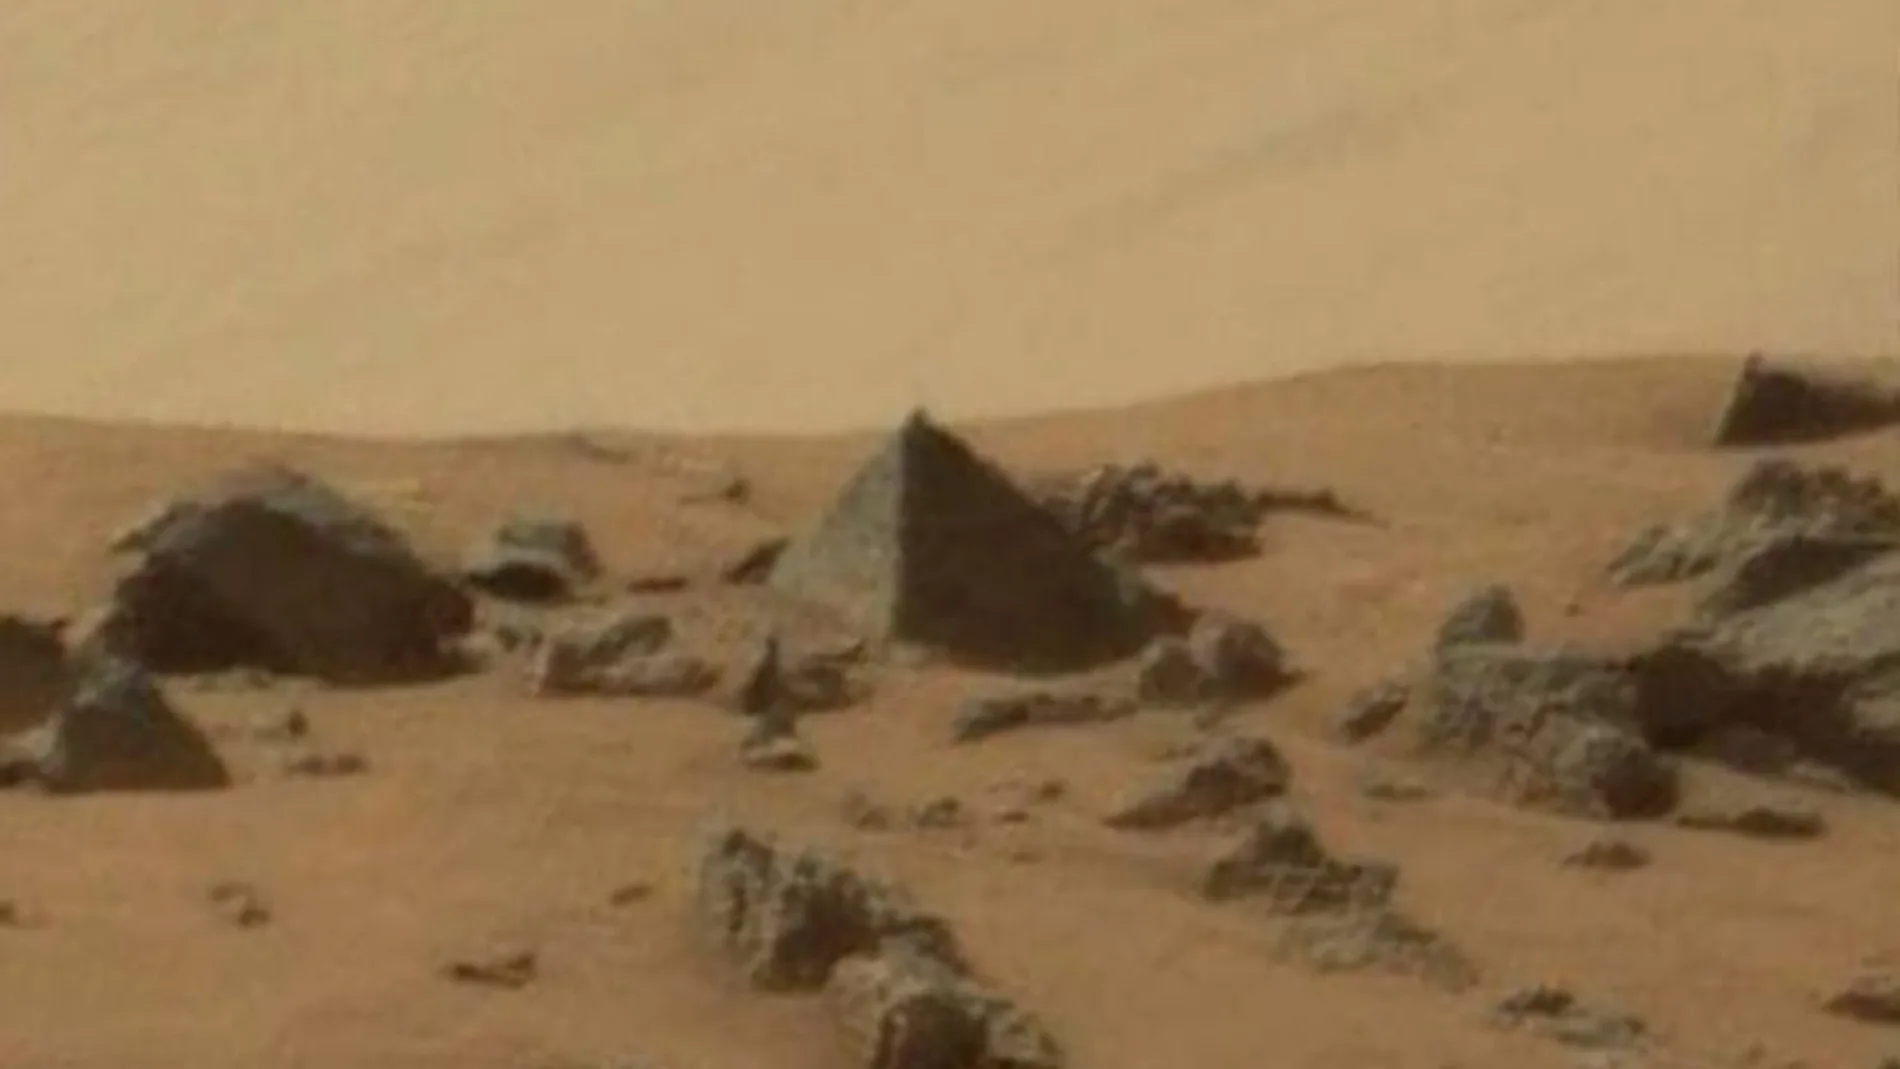 Imagen de la roca en forma de pirámide localizada por el robot Curiosity